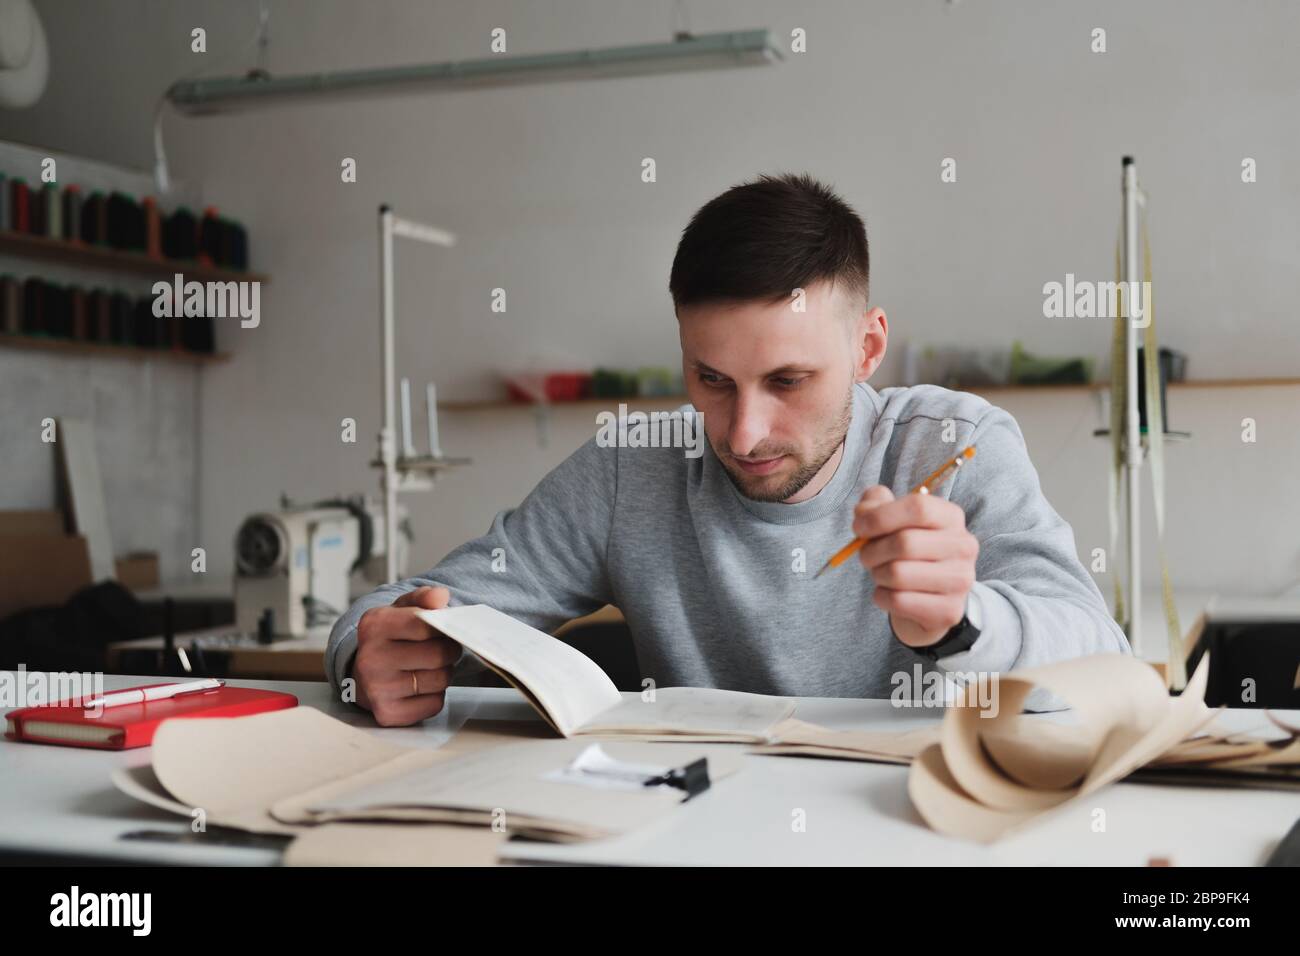 Hombre haciendo ingeniería o manejando trabajo en un taller genérico. Pequeña empresa local, retrato de diseñador de ropa Foto de stock